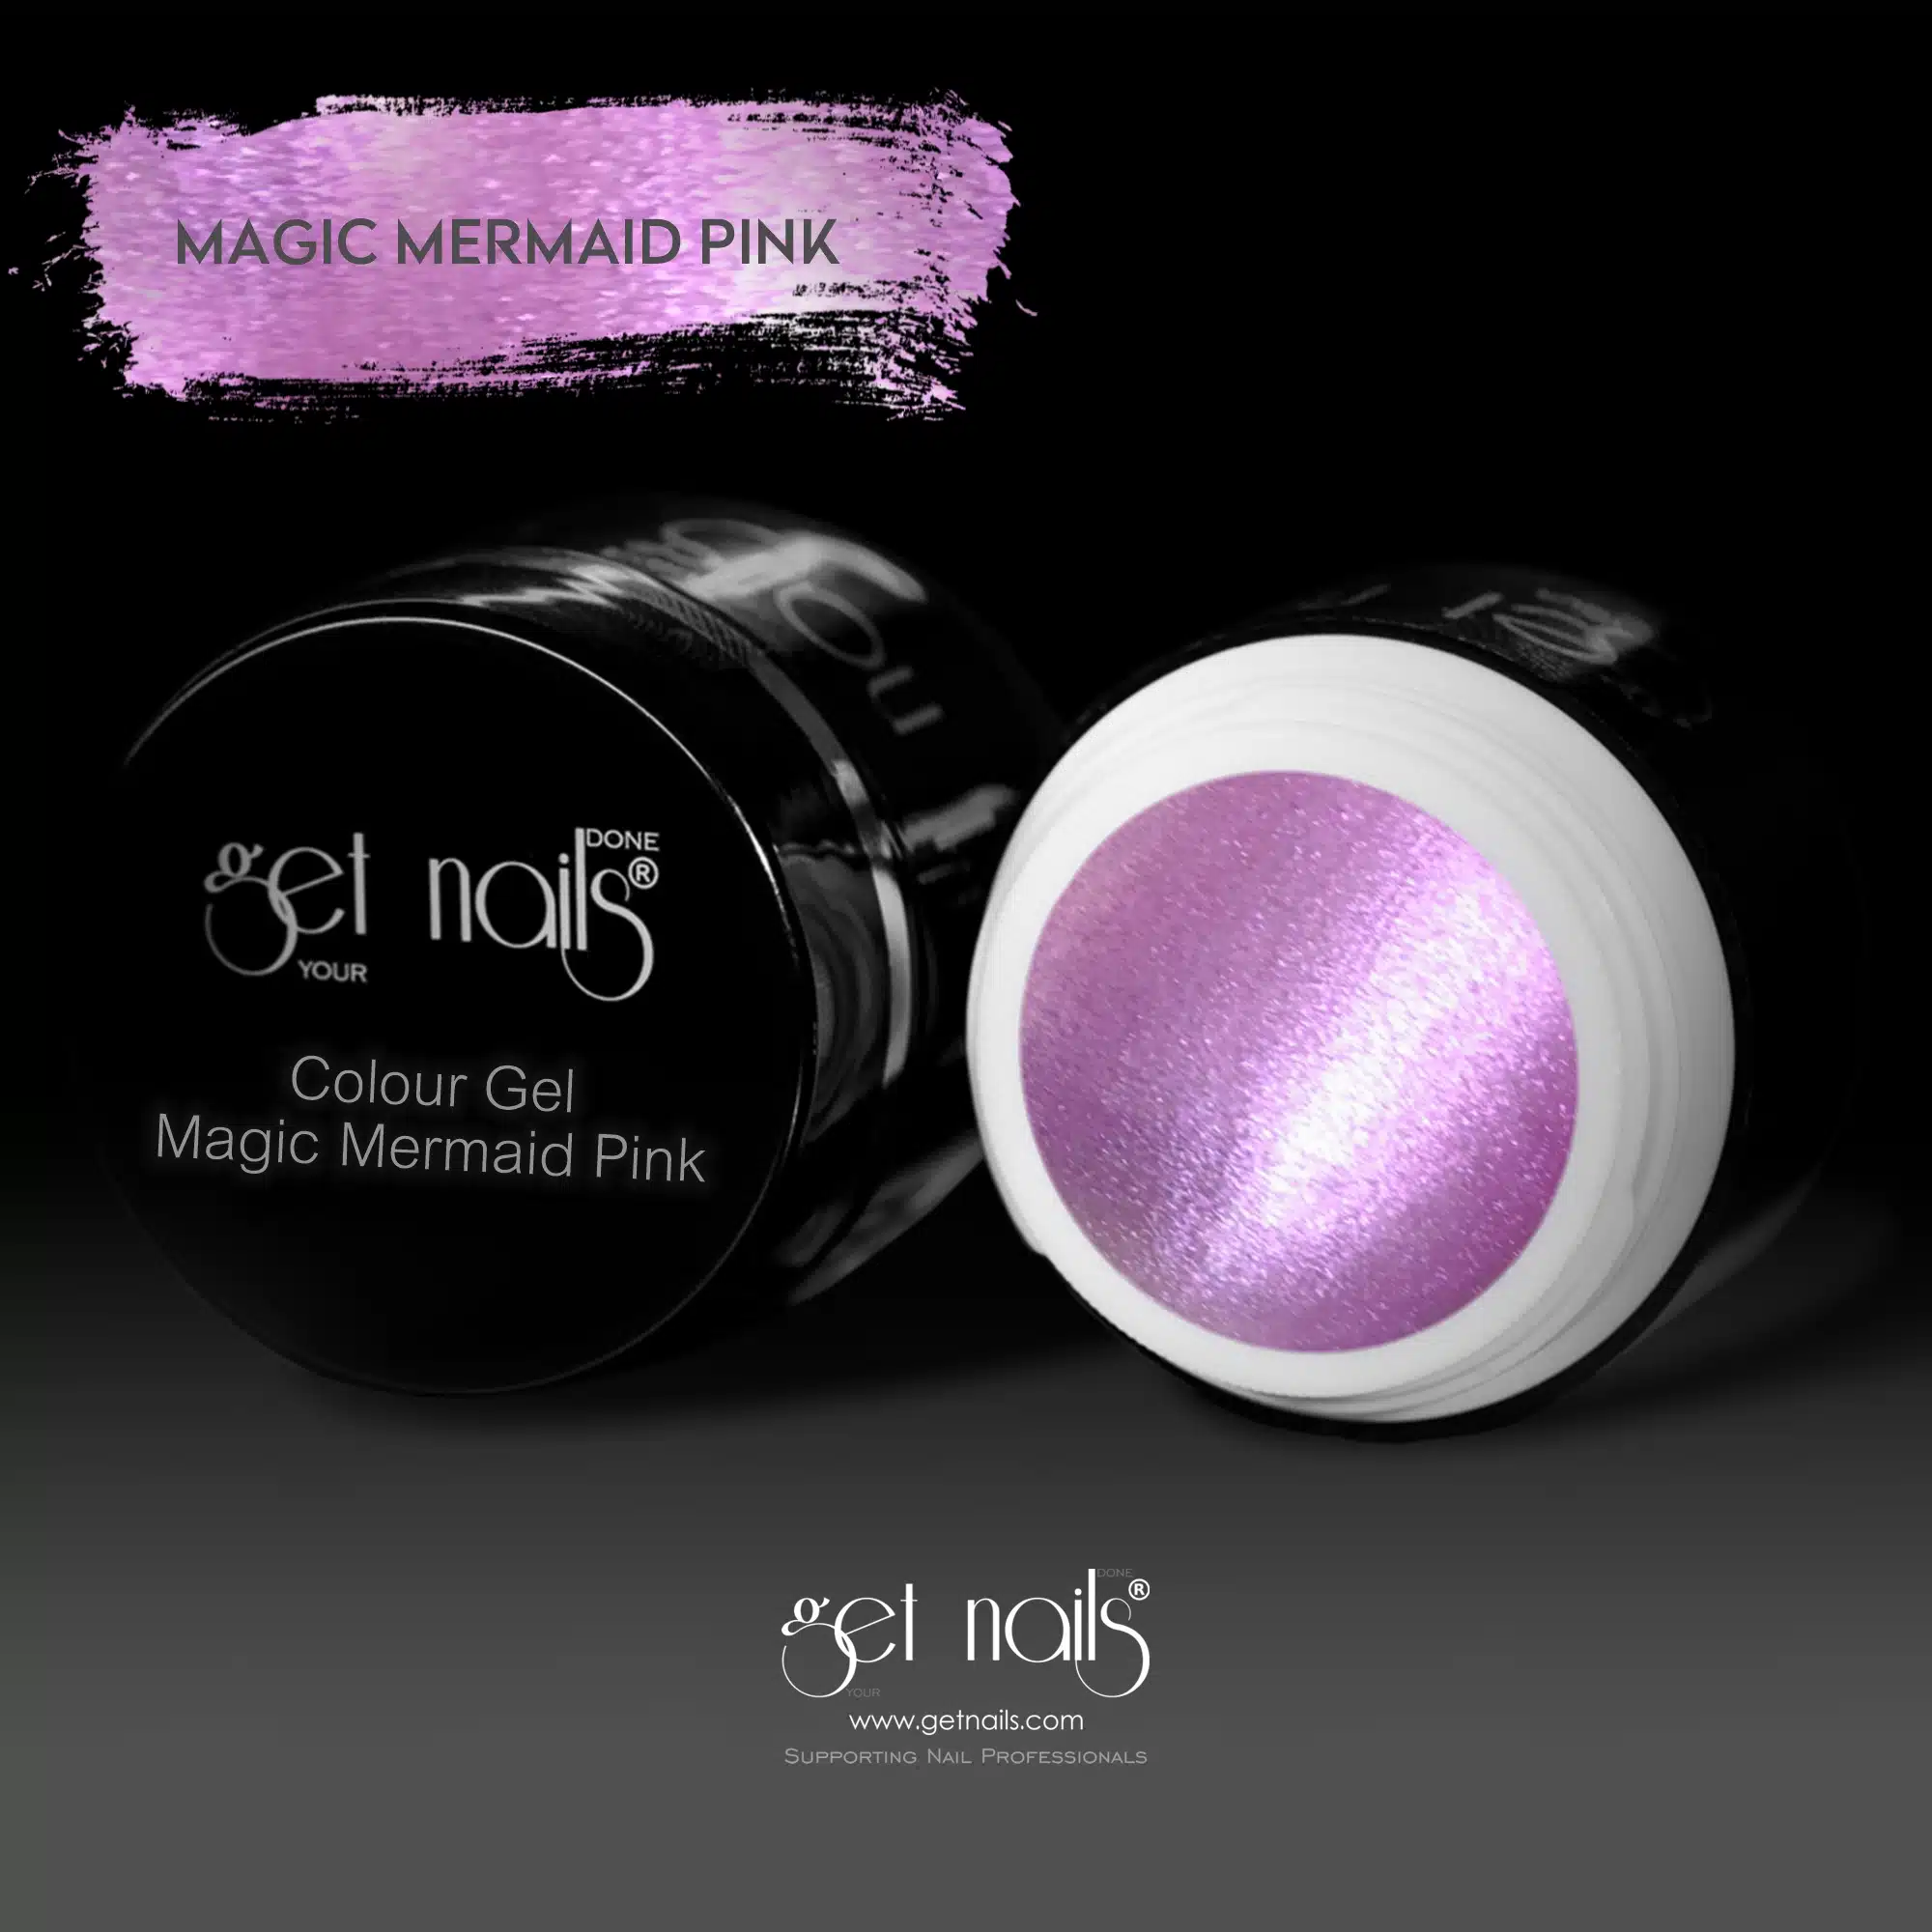 Get Nails Austria - Colour Gel Magic Mermaid Pink 5g